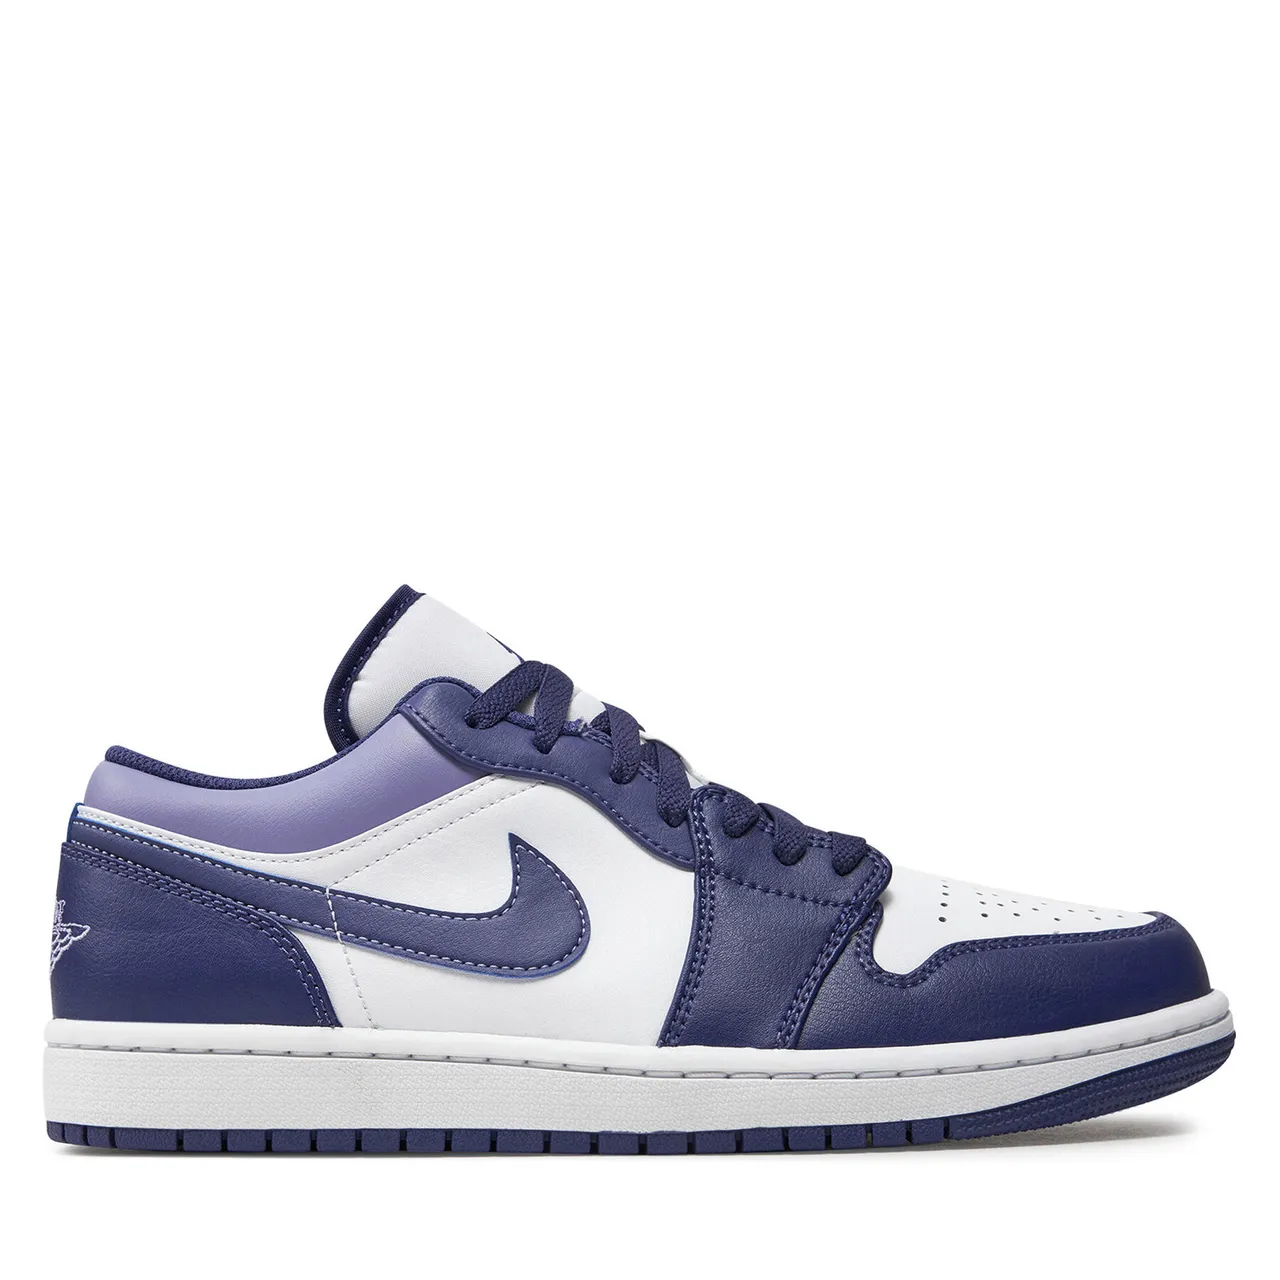 Sneakers Nike Air Jordan 1 Low 553558 515 Violett